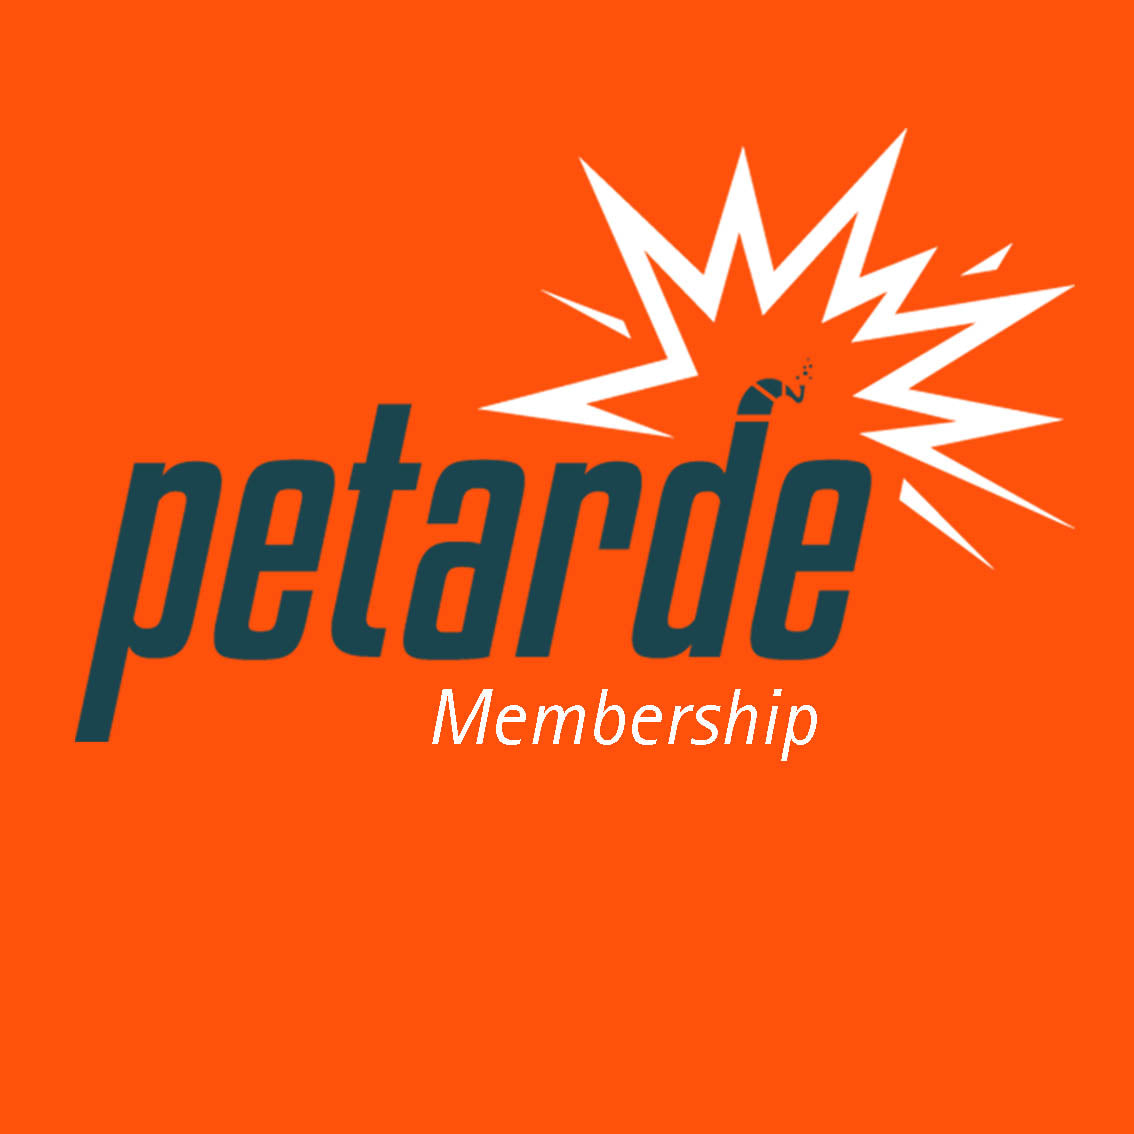 Petarde-Membership